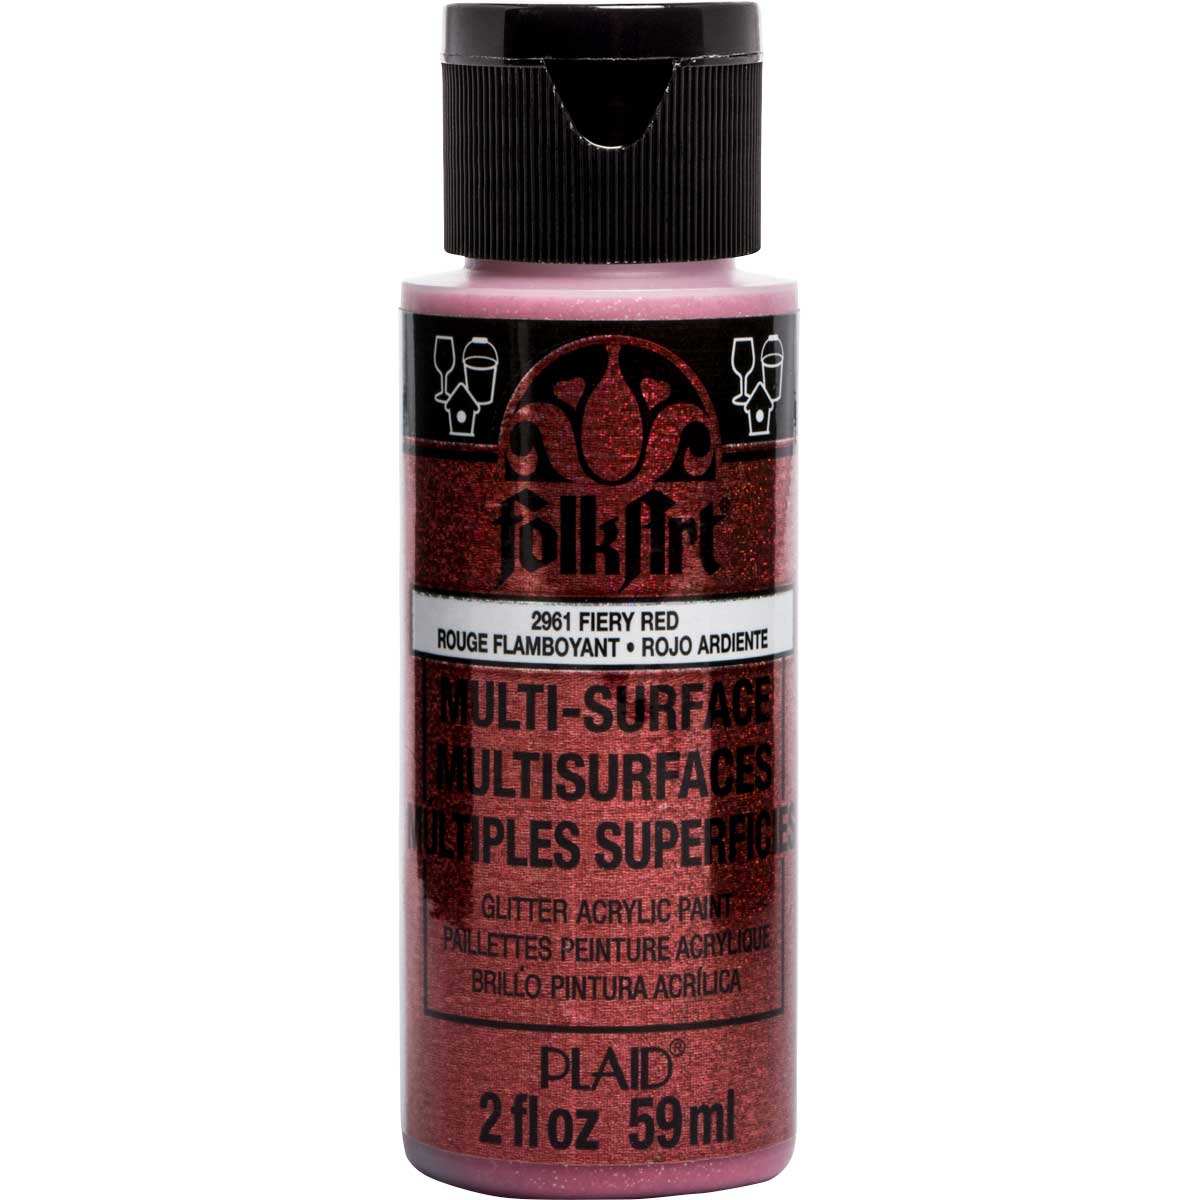 FolkArt ® Multi-Surface Glitter Acrylic Paints - Fiery Red, 2 oz. - 2961